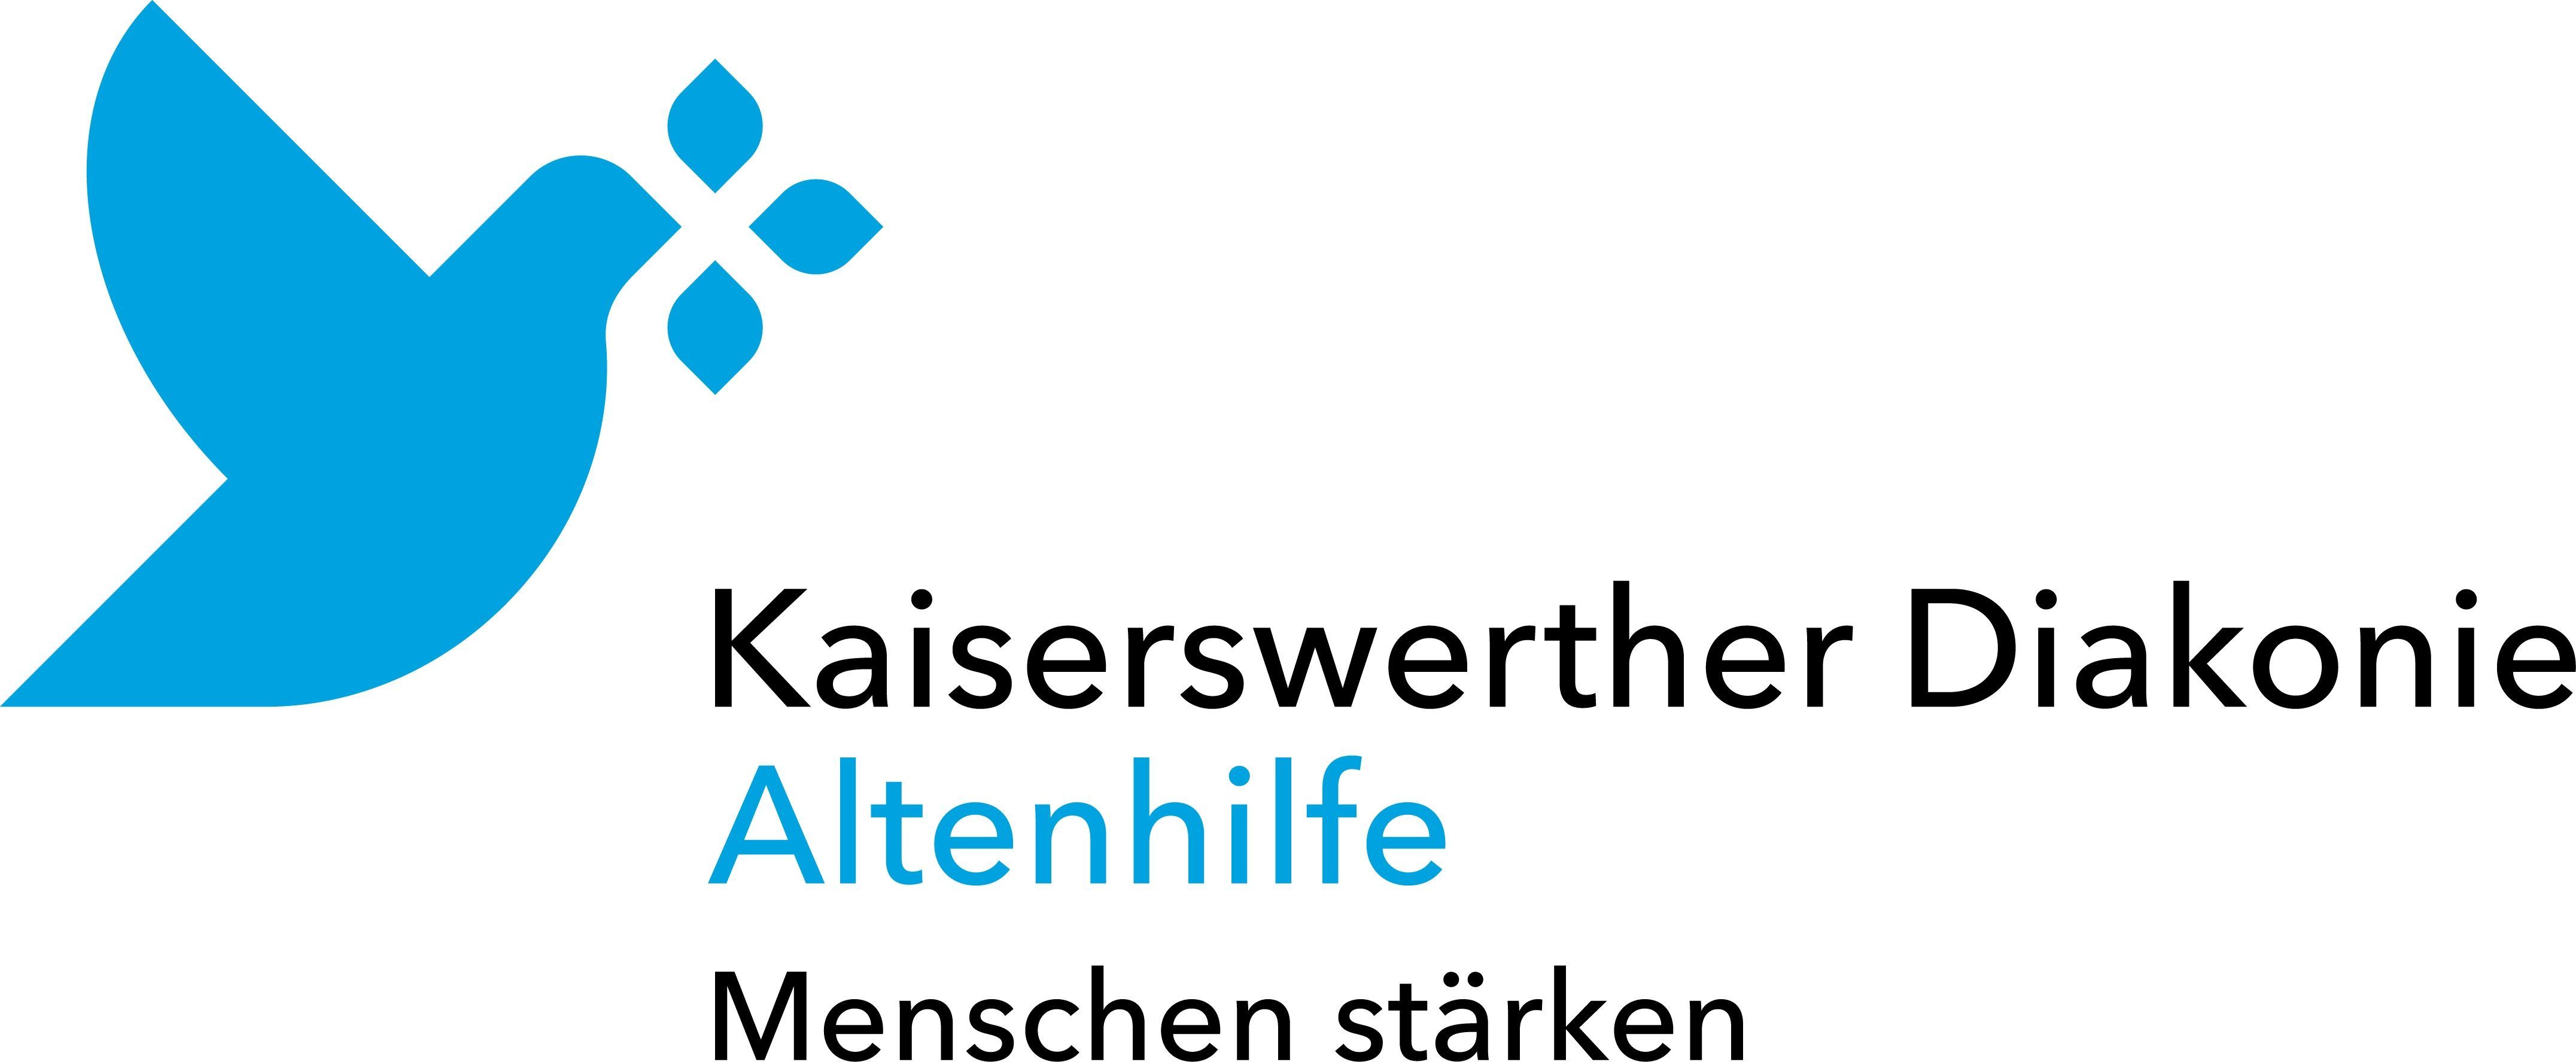 Logo: Altenhilfe der Kaiserswerther Diakonie gGmbH